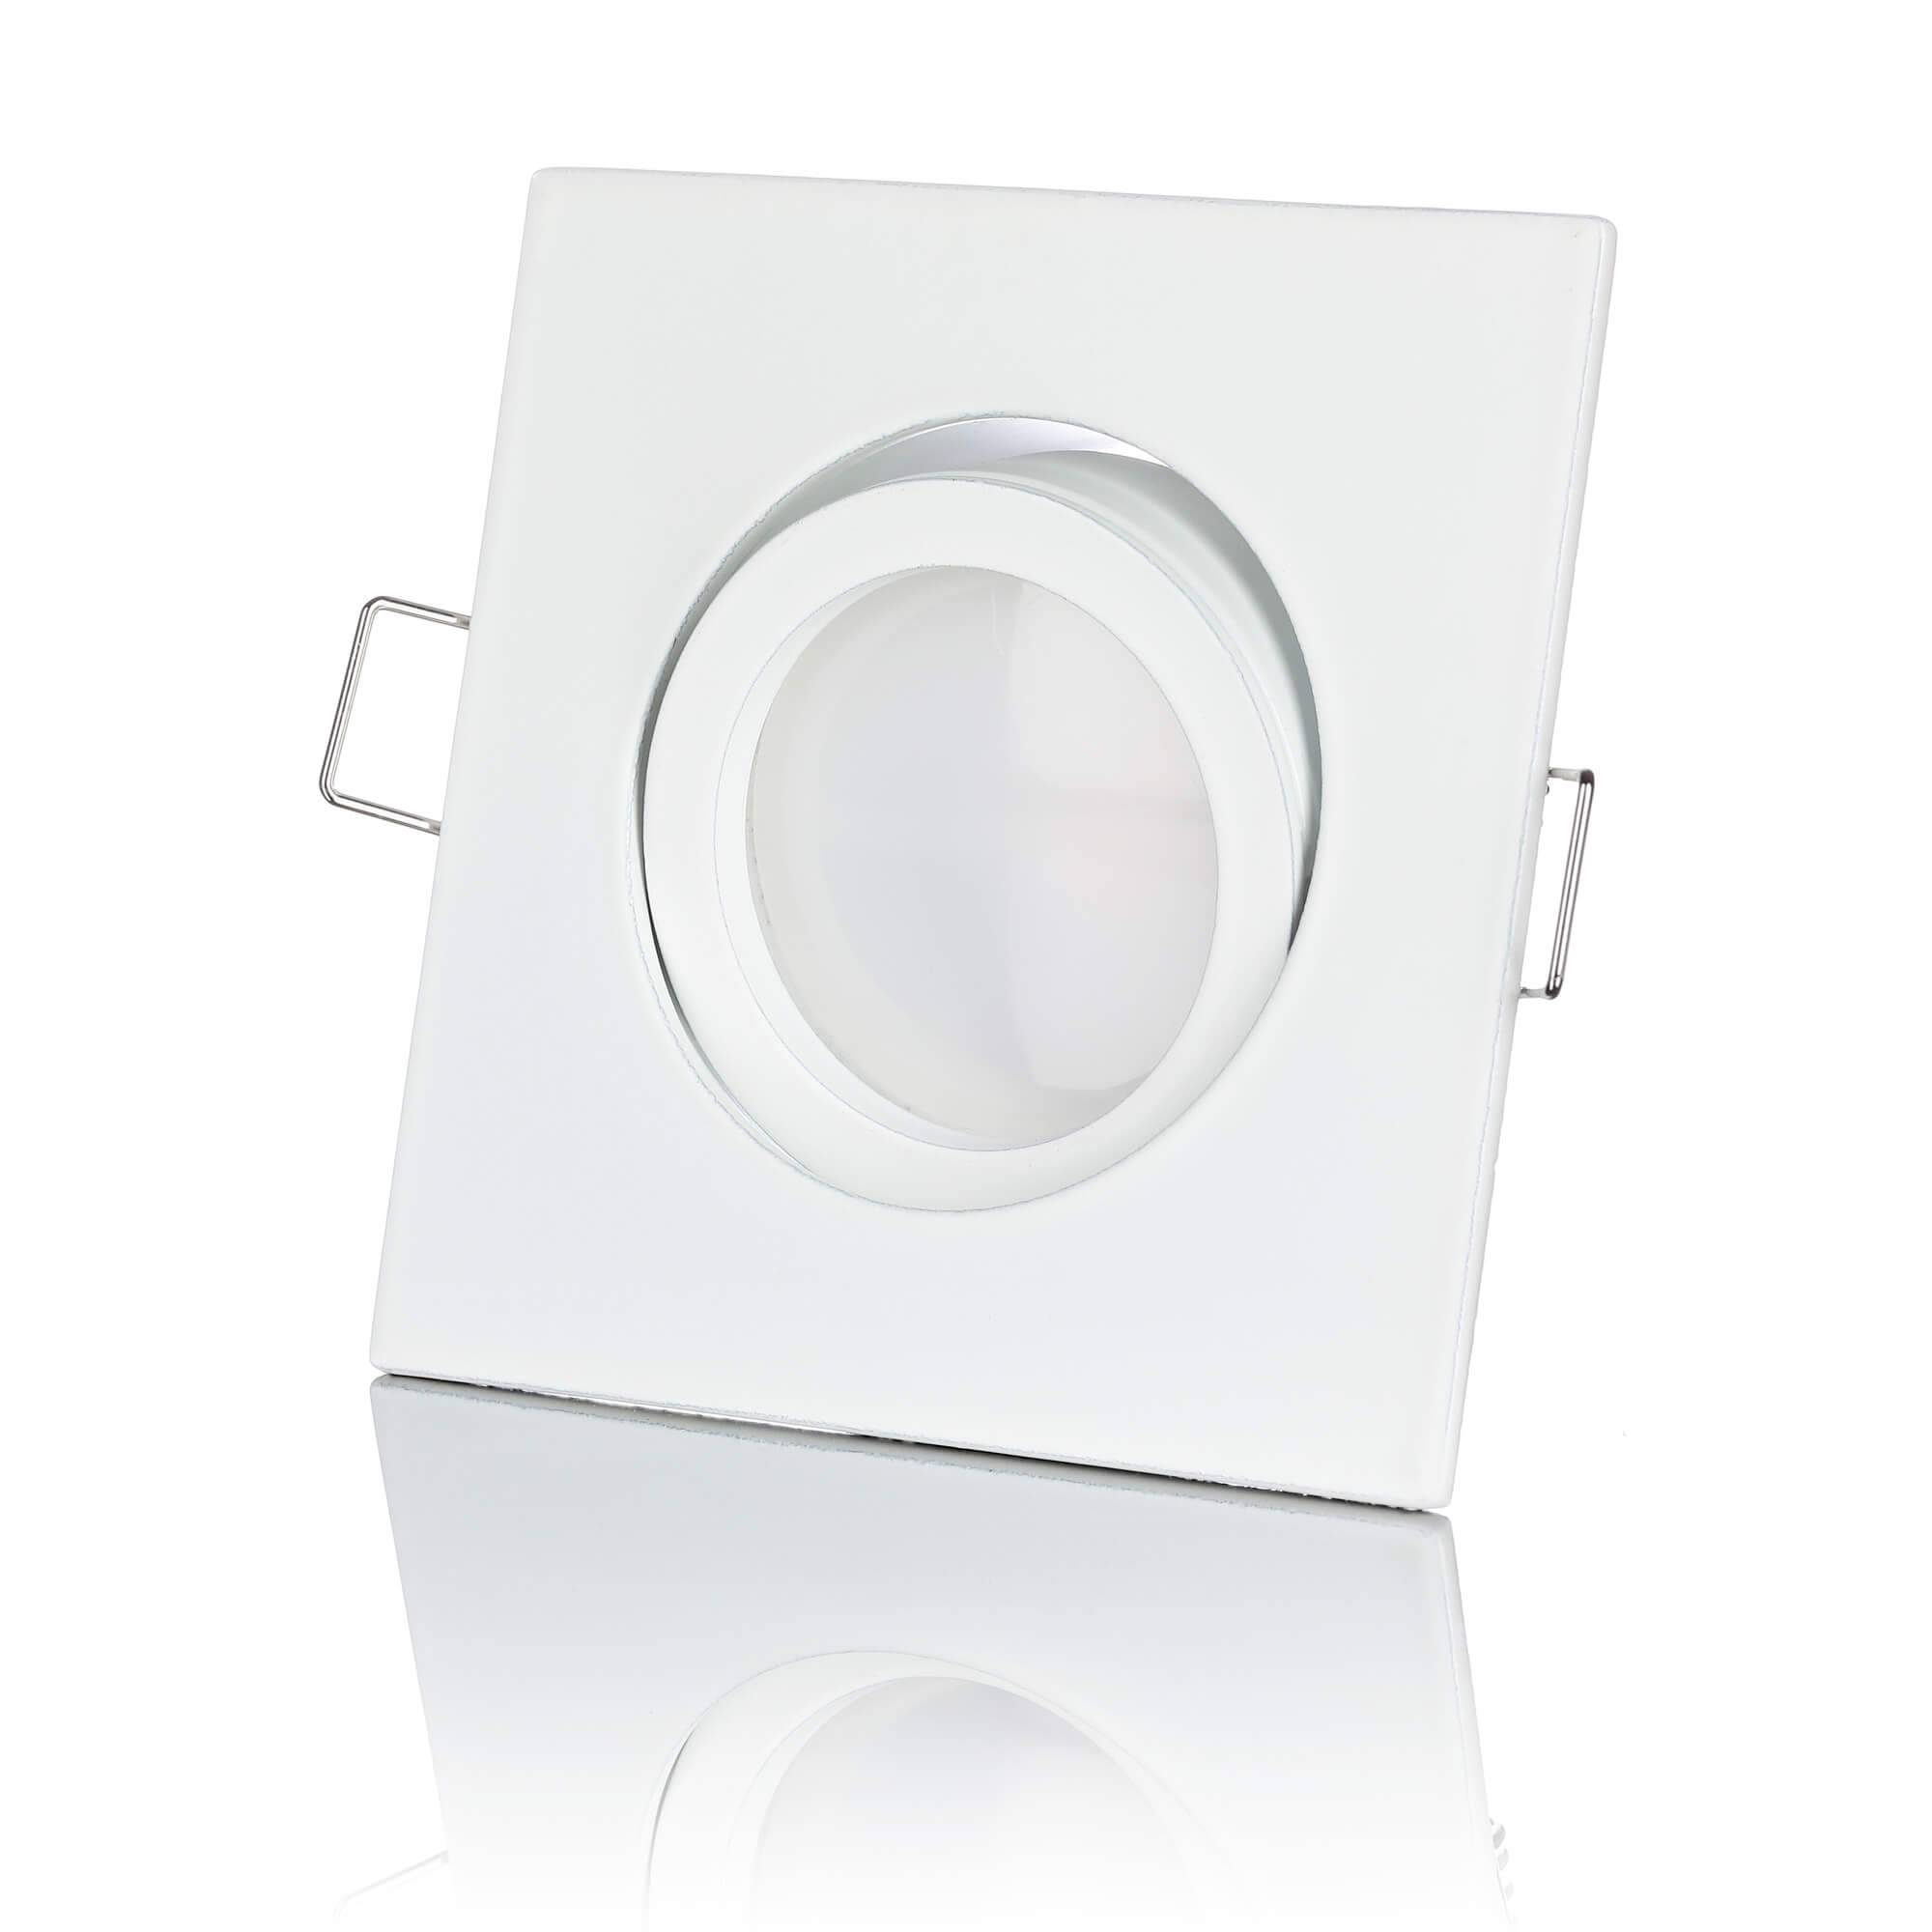 LED Einbaustrahler Flach - Weiß Eckig 5W Dimmbar 120° - Rapid